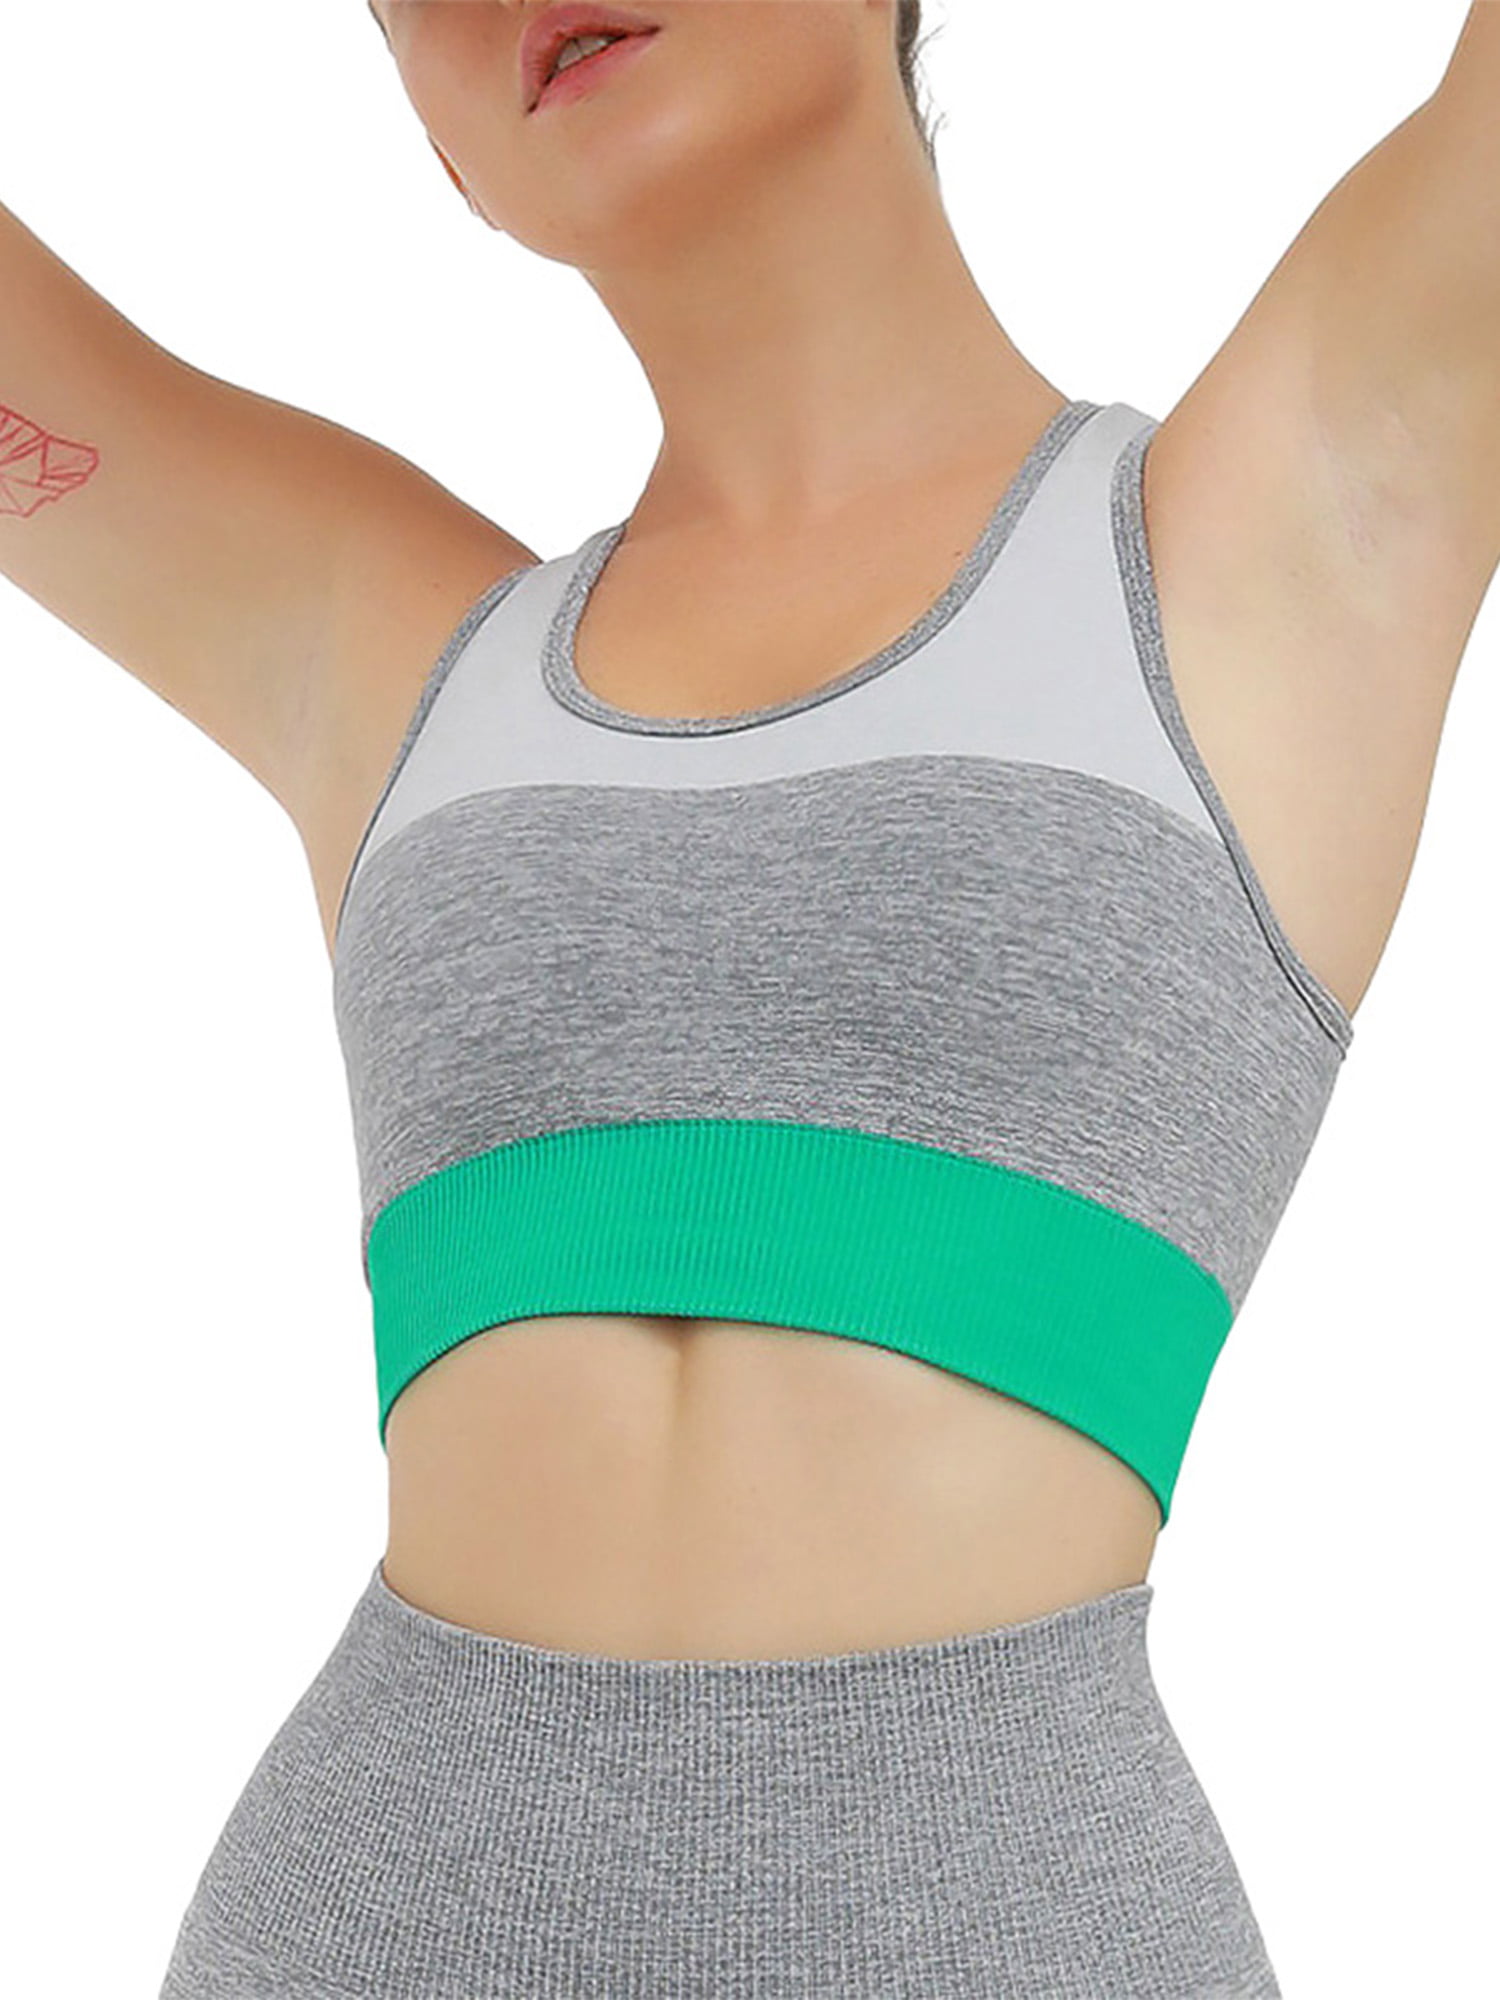 Details about   Women Cross Backless Patchwork Pattern Yoga Bra Sportswear Fitness Tank Crop Top 